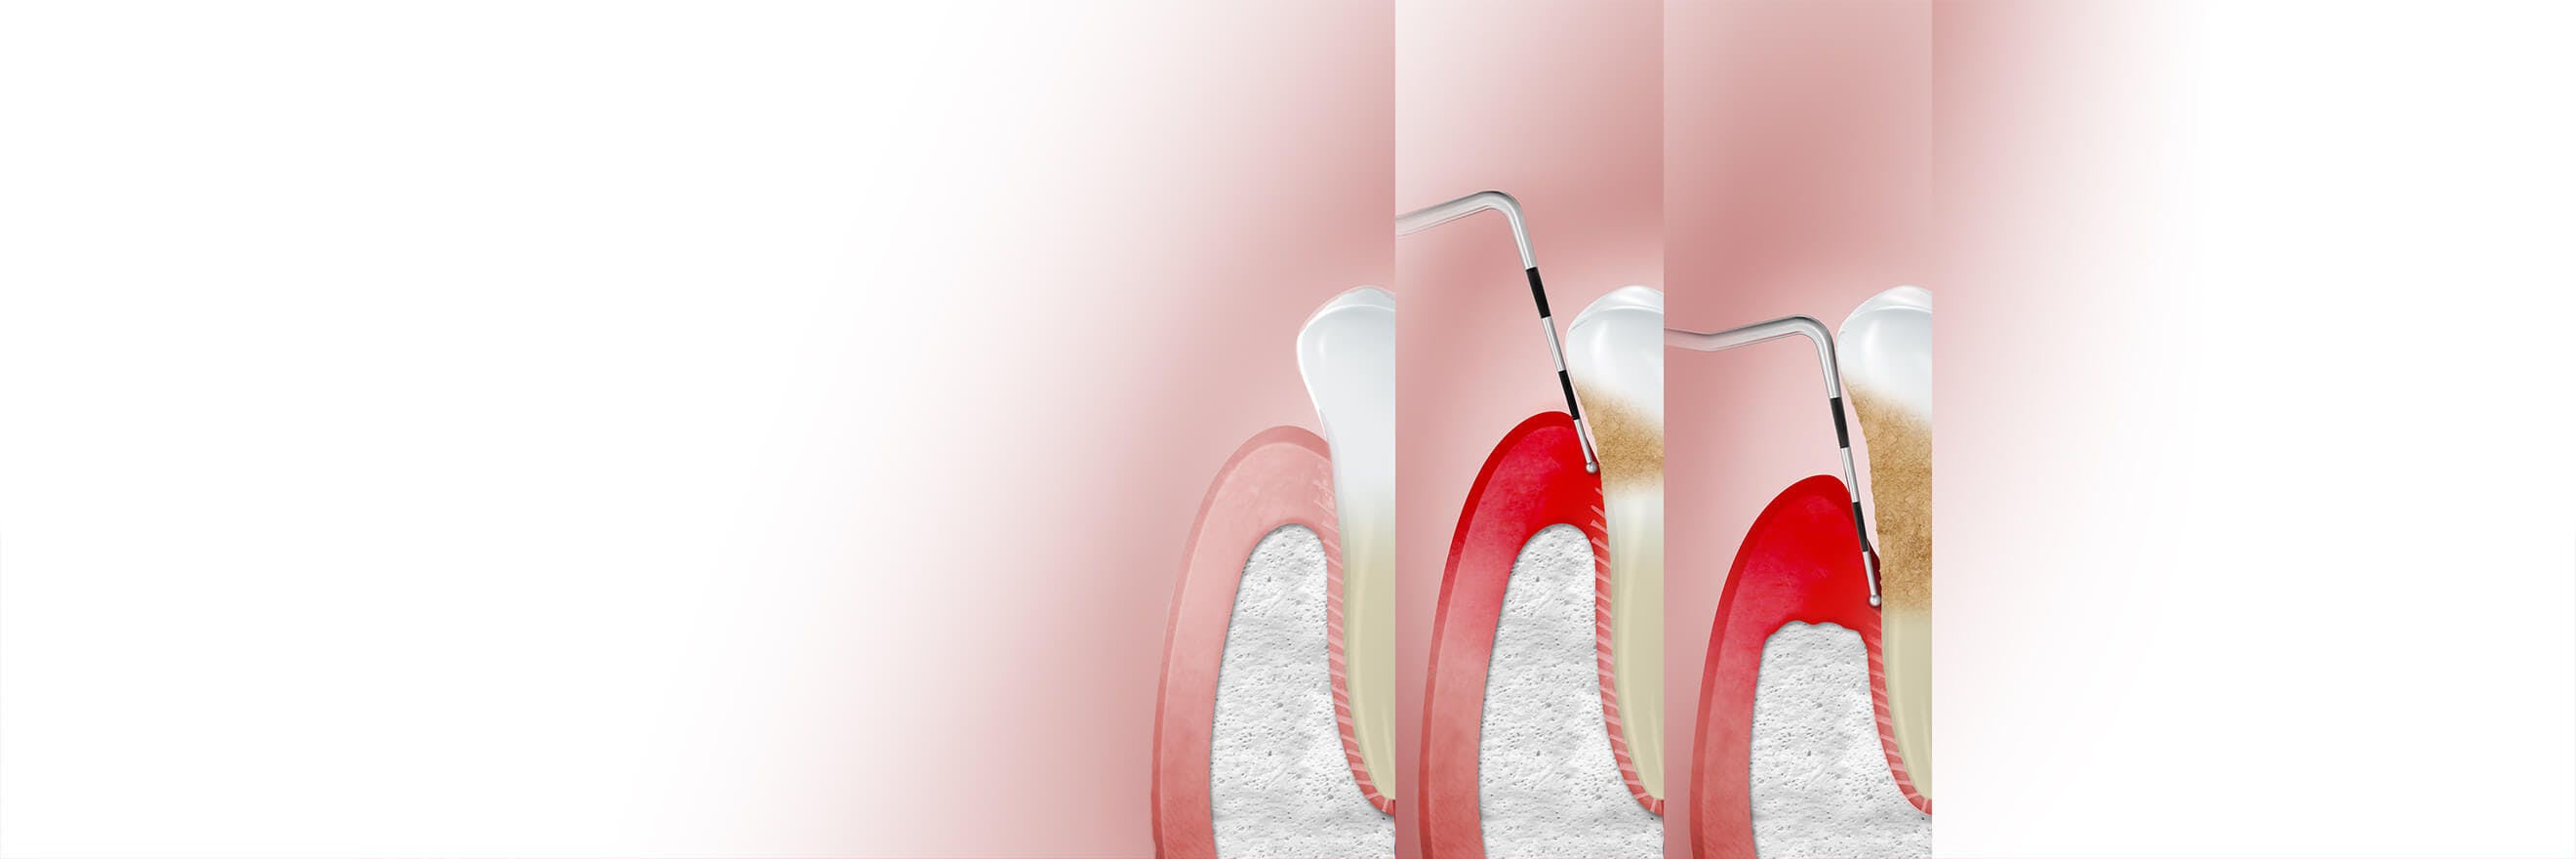 Teeth with increasing levels of gum disease